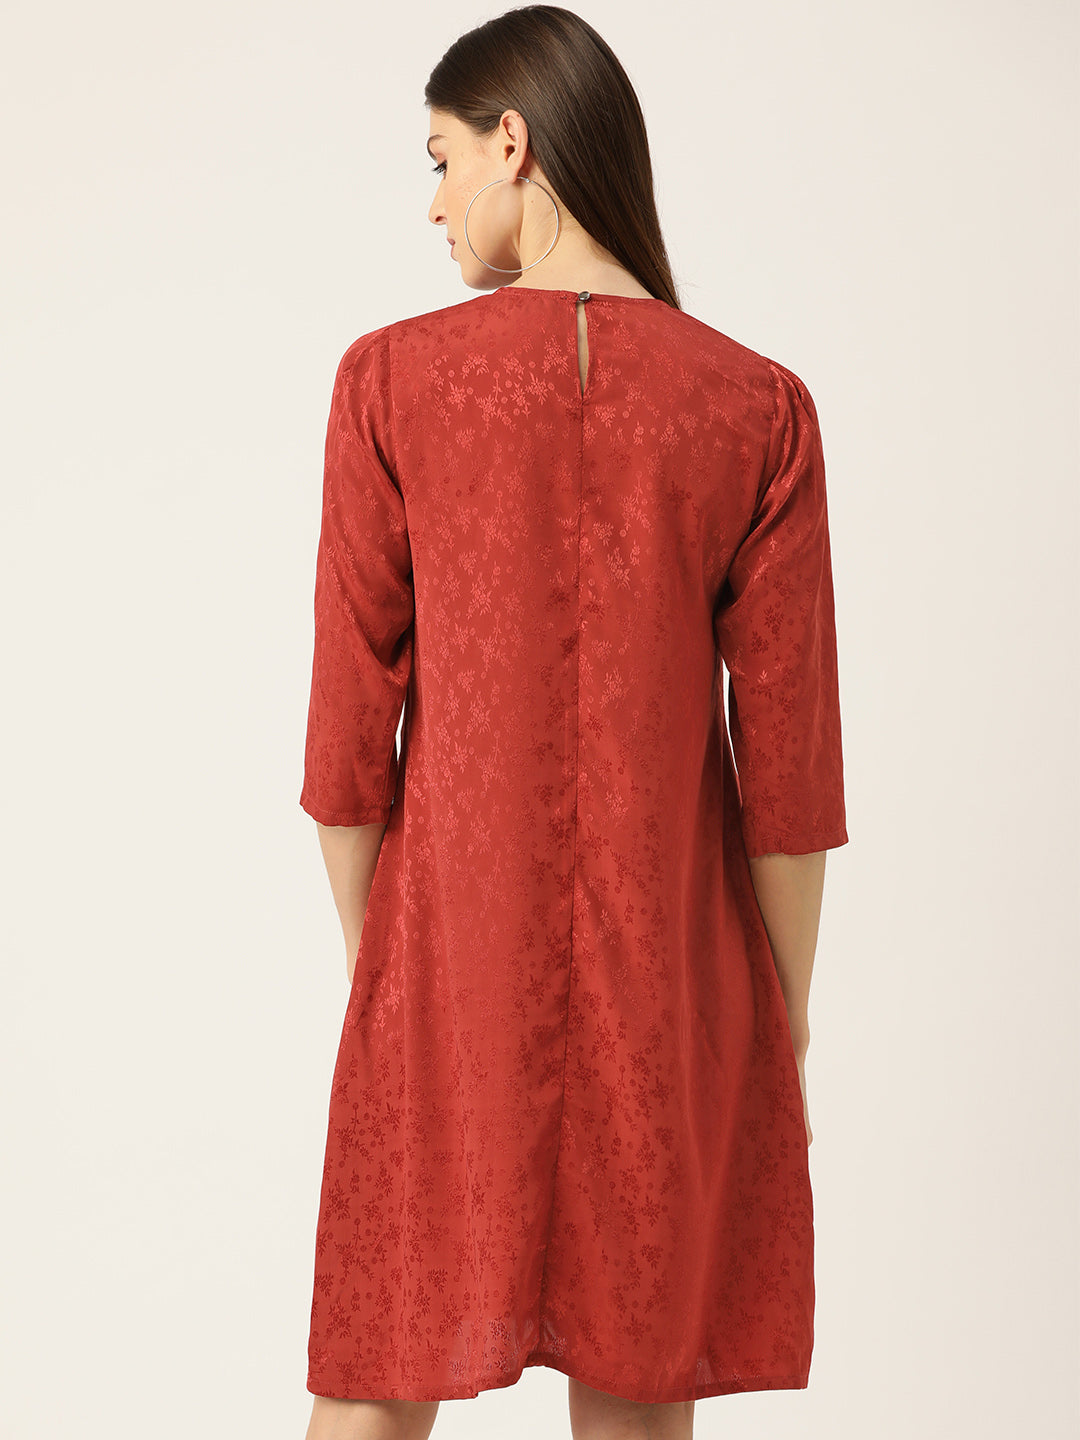 Women Rust Red Self Design A-Line Dress